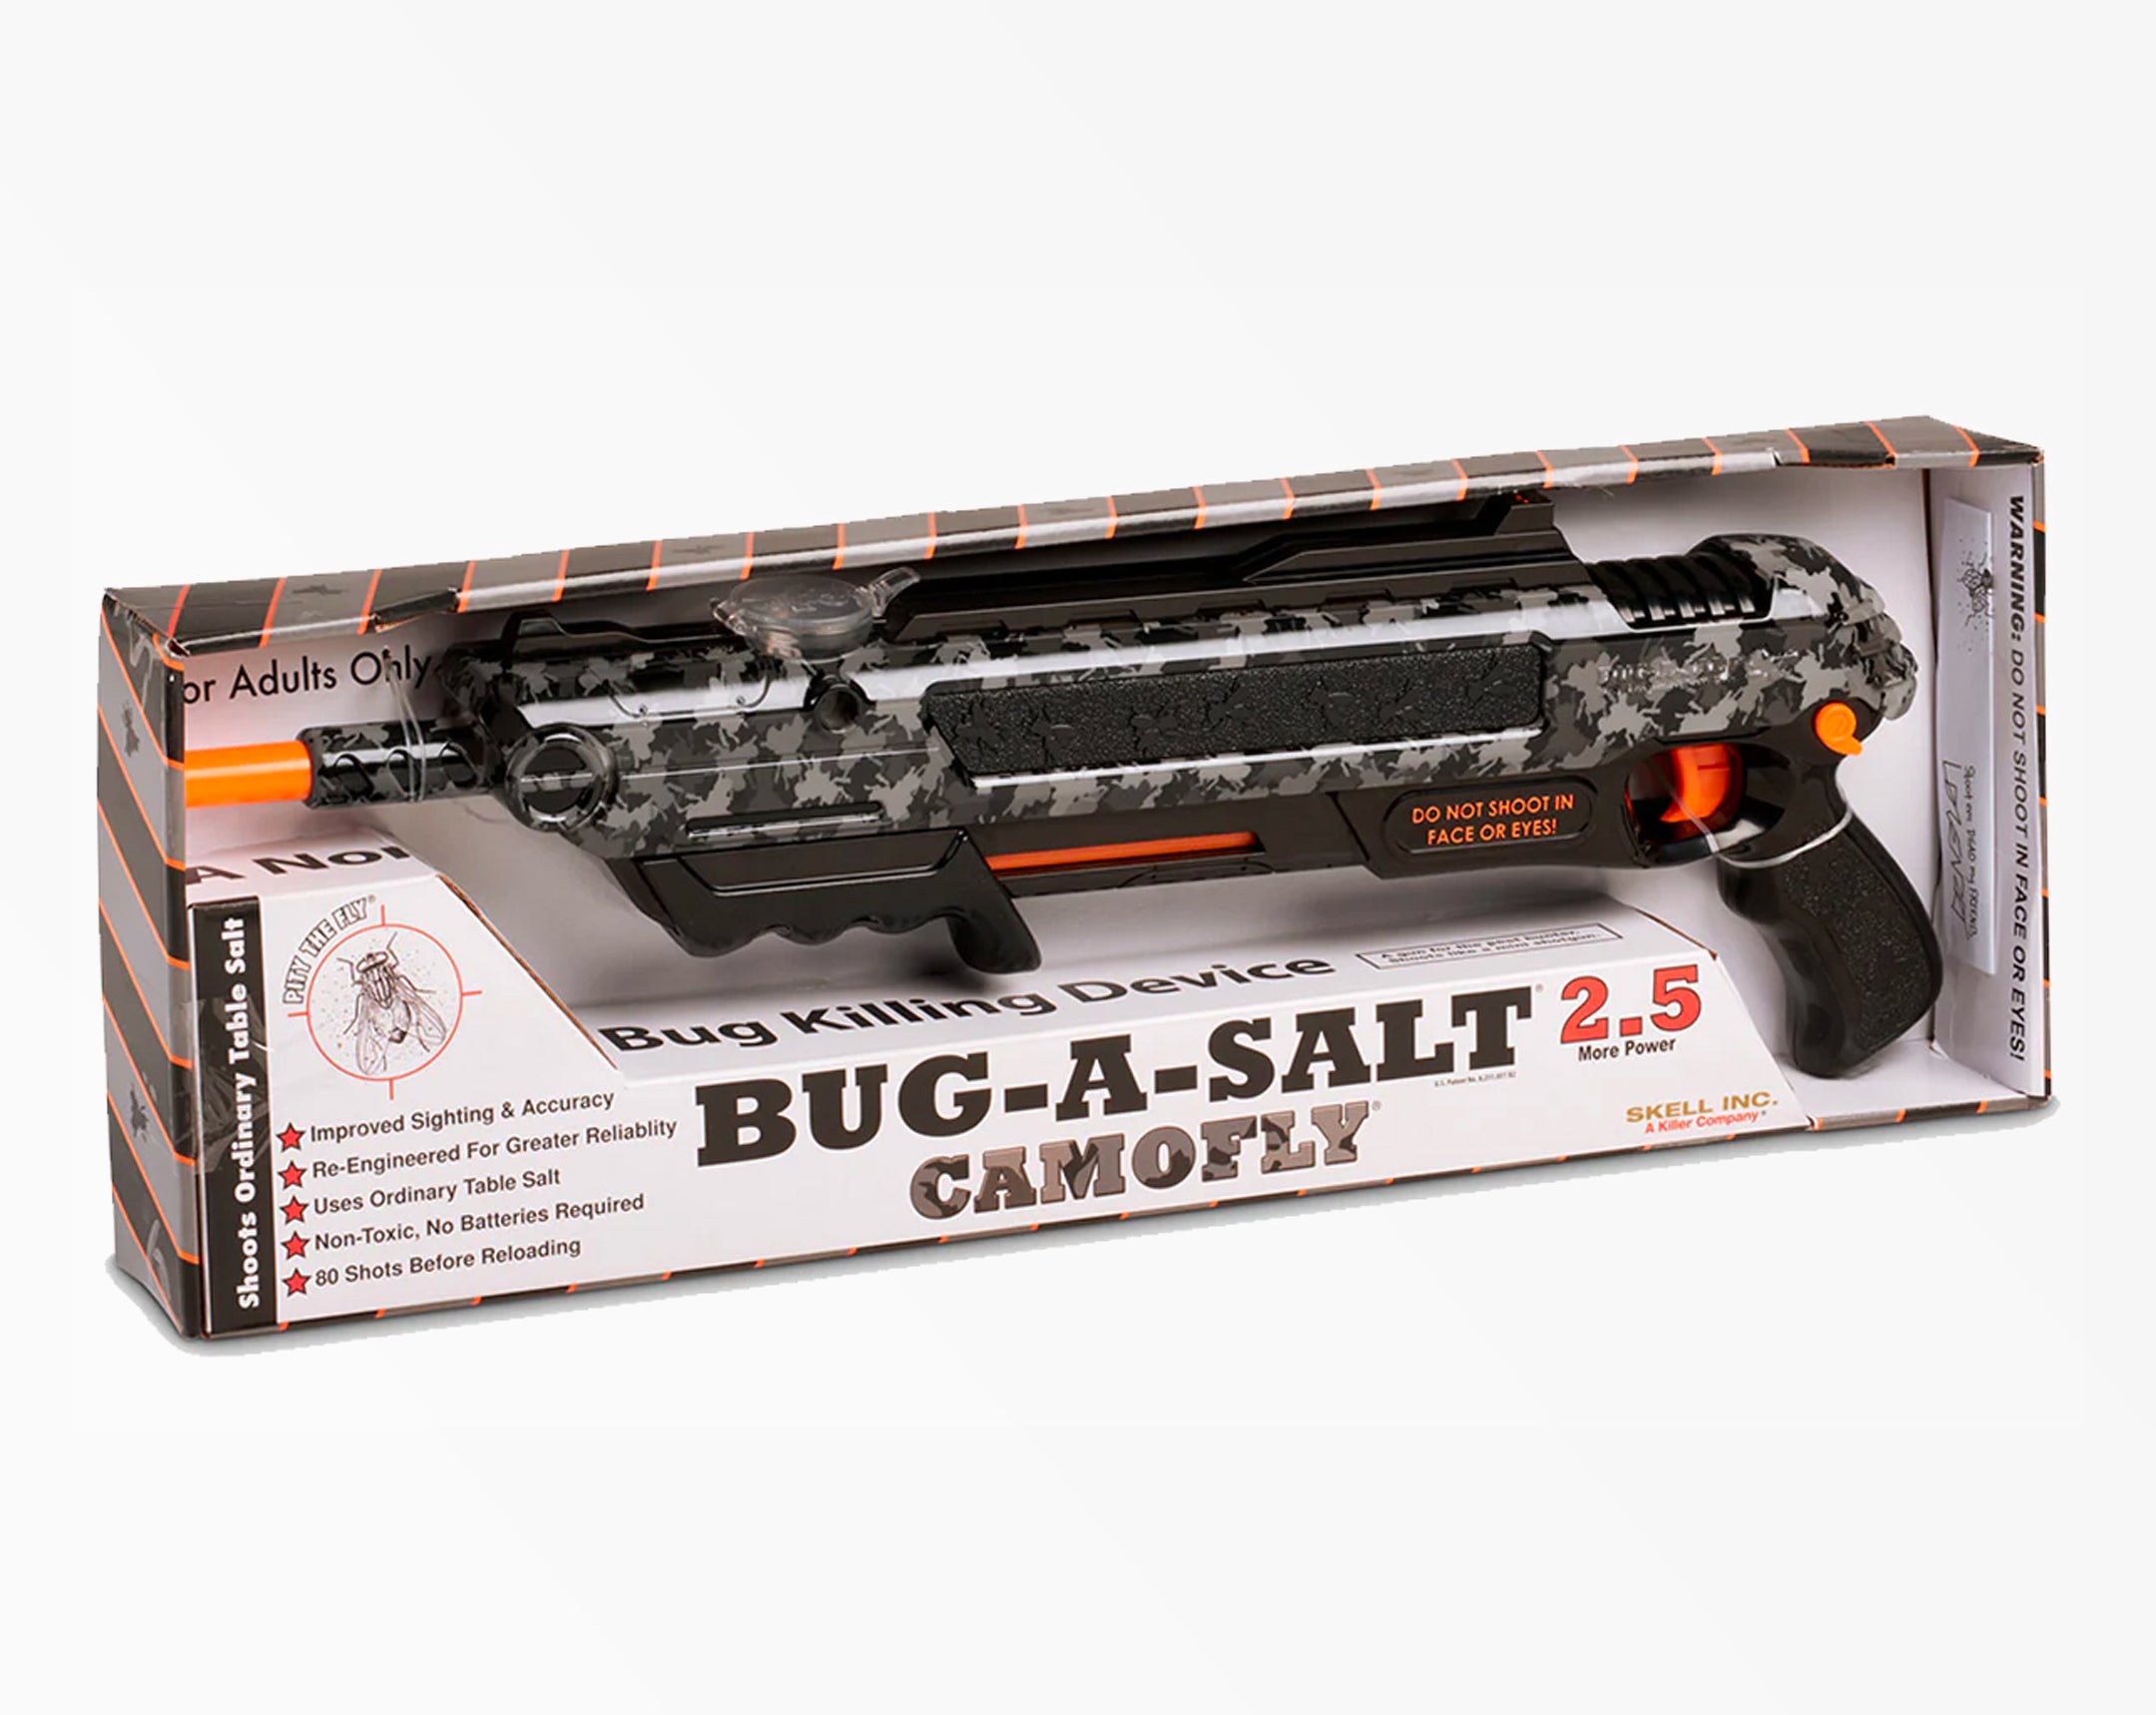 Bug-A-Salt Camofly 2.5